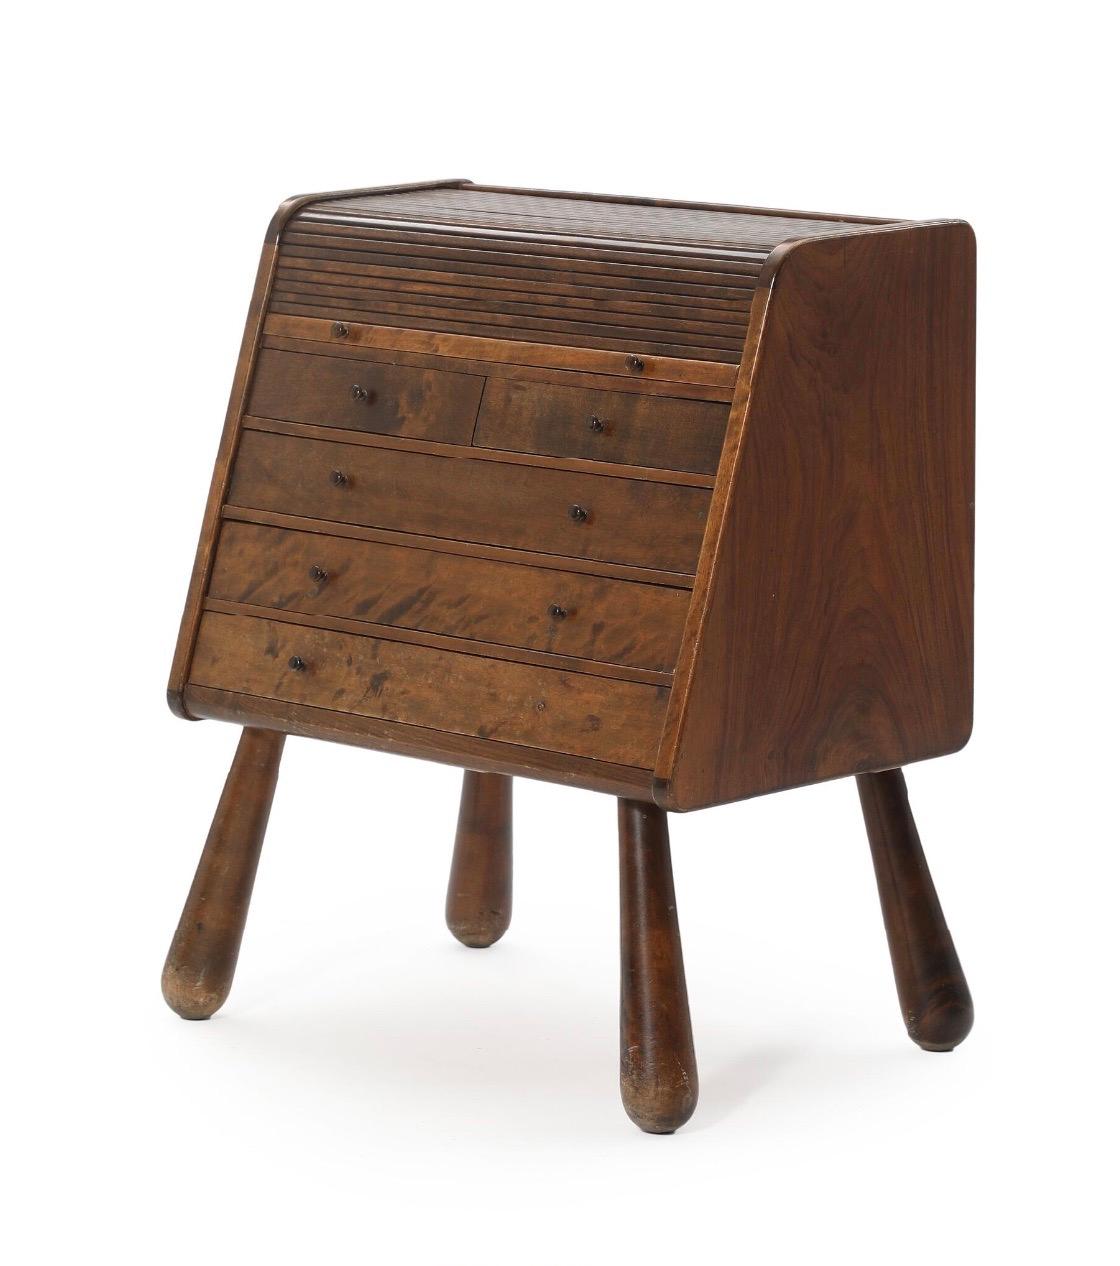 Le bouleau flammé était un choix de bois populaire pour les meubles Art déco dans les années 1930, et cette commode présente plusieurs éléments de design typiques de l'Art déco. Toutefois, en l'absence d'informations supplémentaires sur le designer